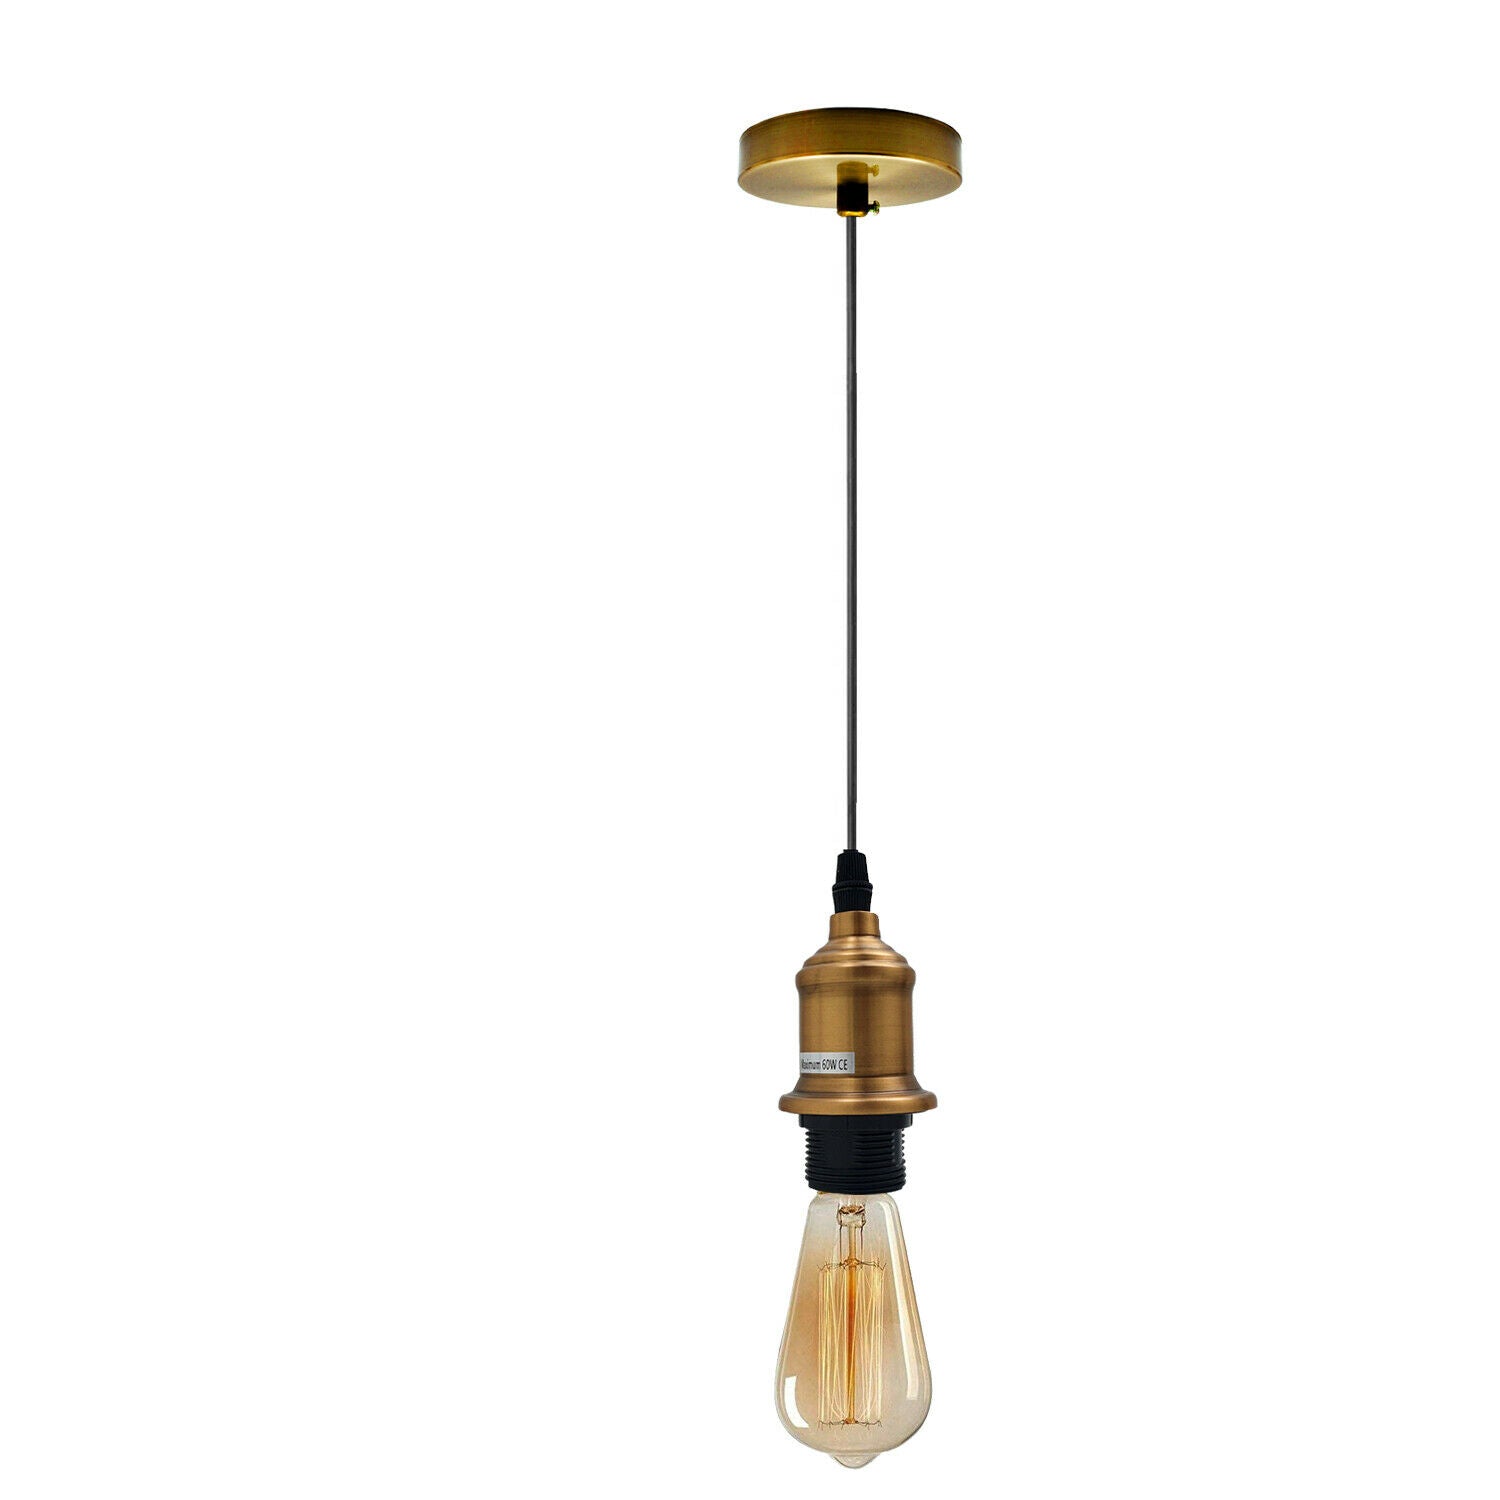 New E27 Ceiling Rose Light Fitting Vintage Industrial Pendant Lamp Bulb Holder~2074 - LEDSone UK Ltd